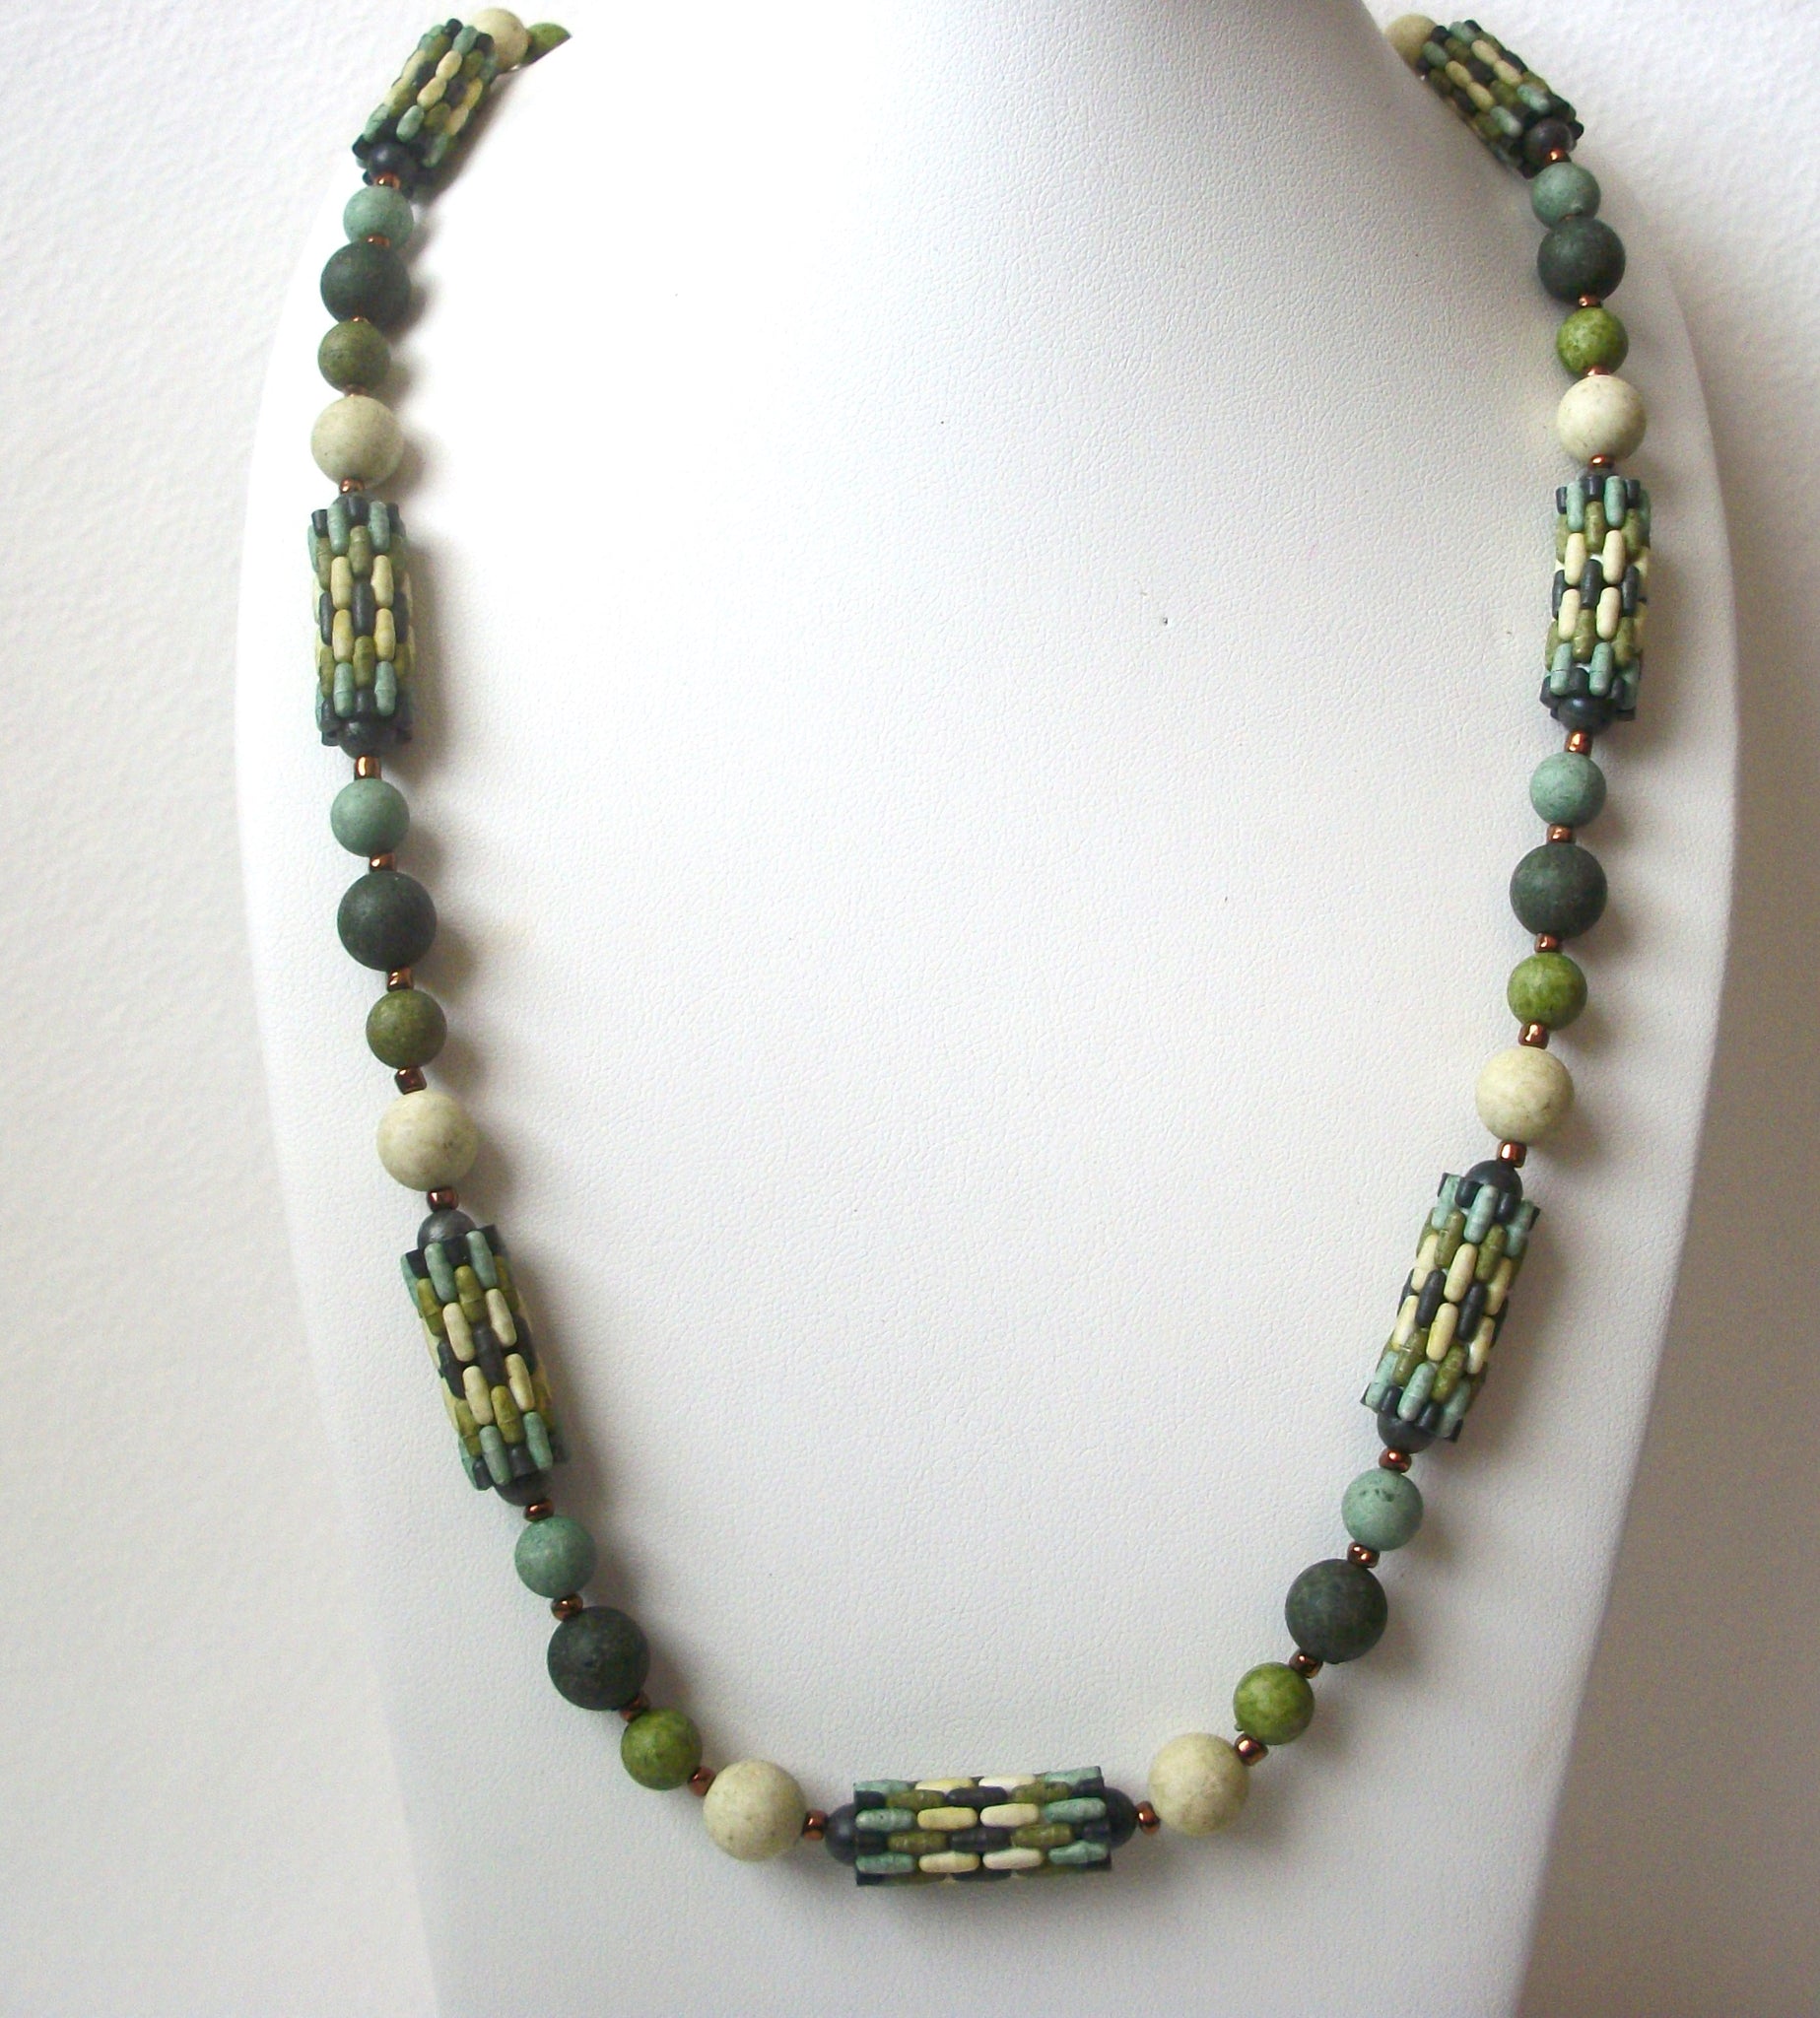 Vintage 1950s Green Old Plastic Beads Necklace 112720 V